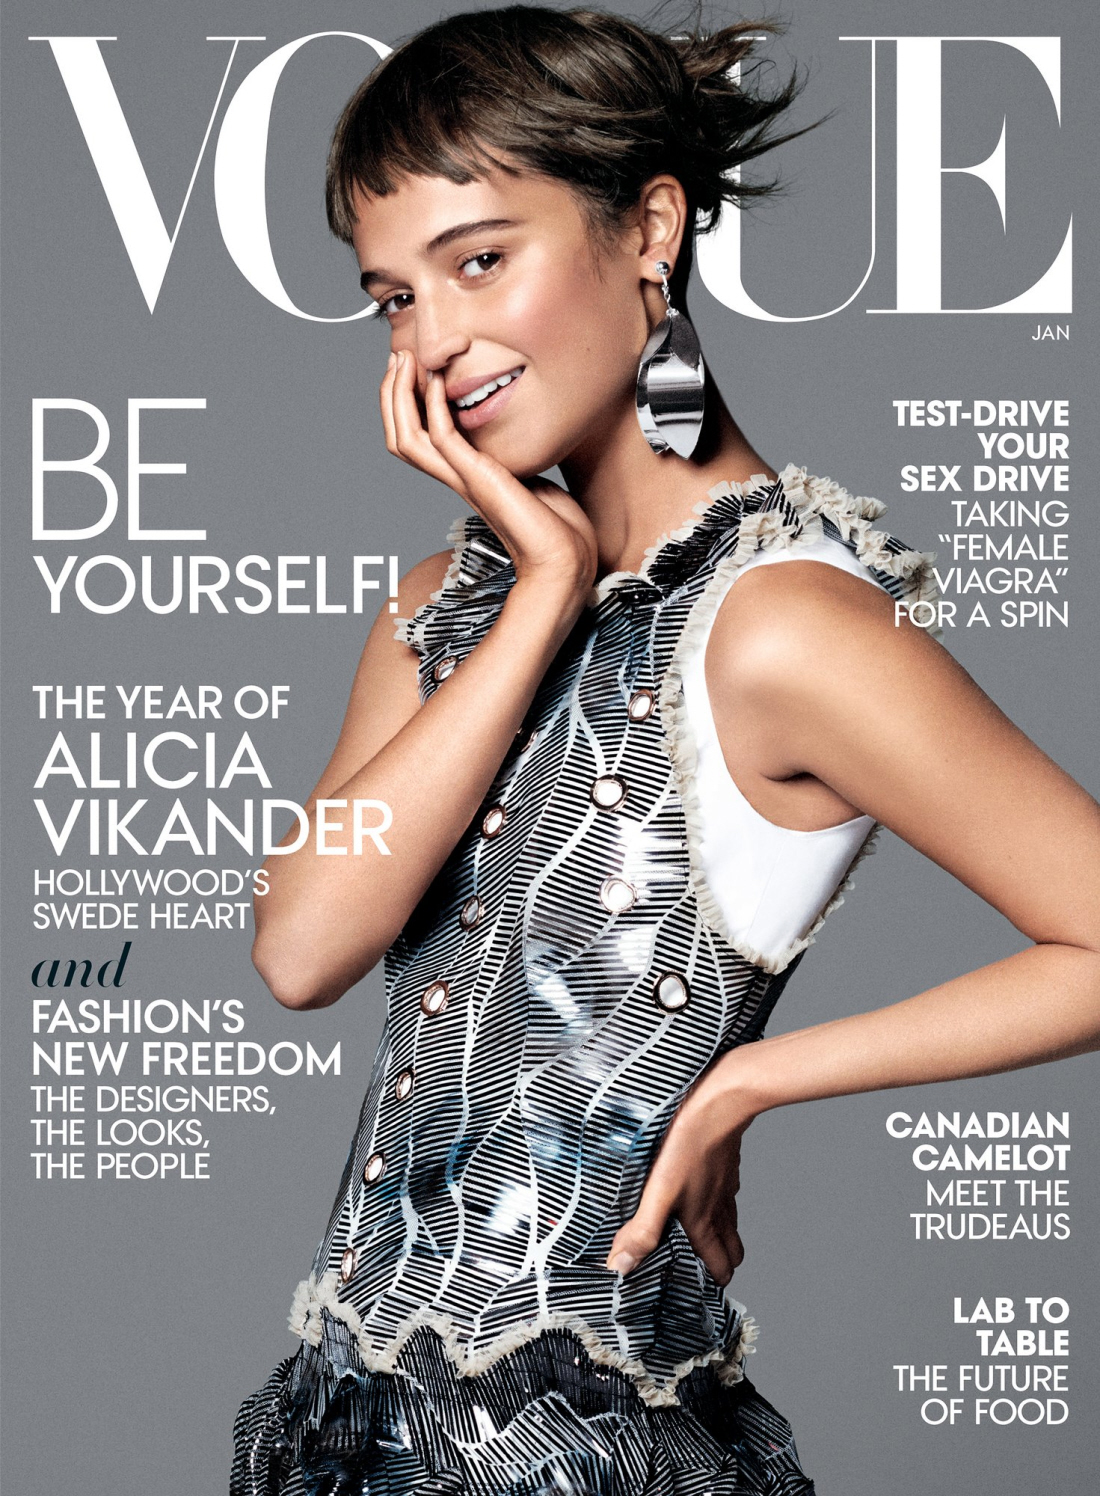 Алисия Викандер рассказывает о Vogue, хочет, чтобы вы знали, что она все еще с Майклом Фассбендером